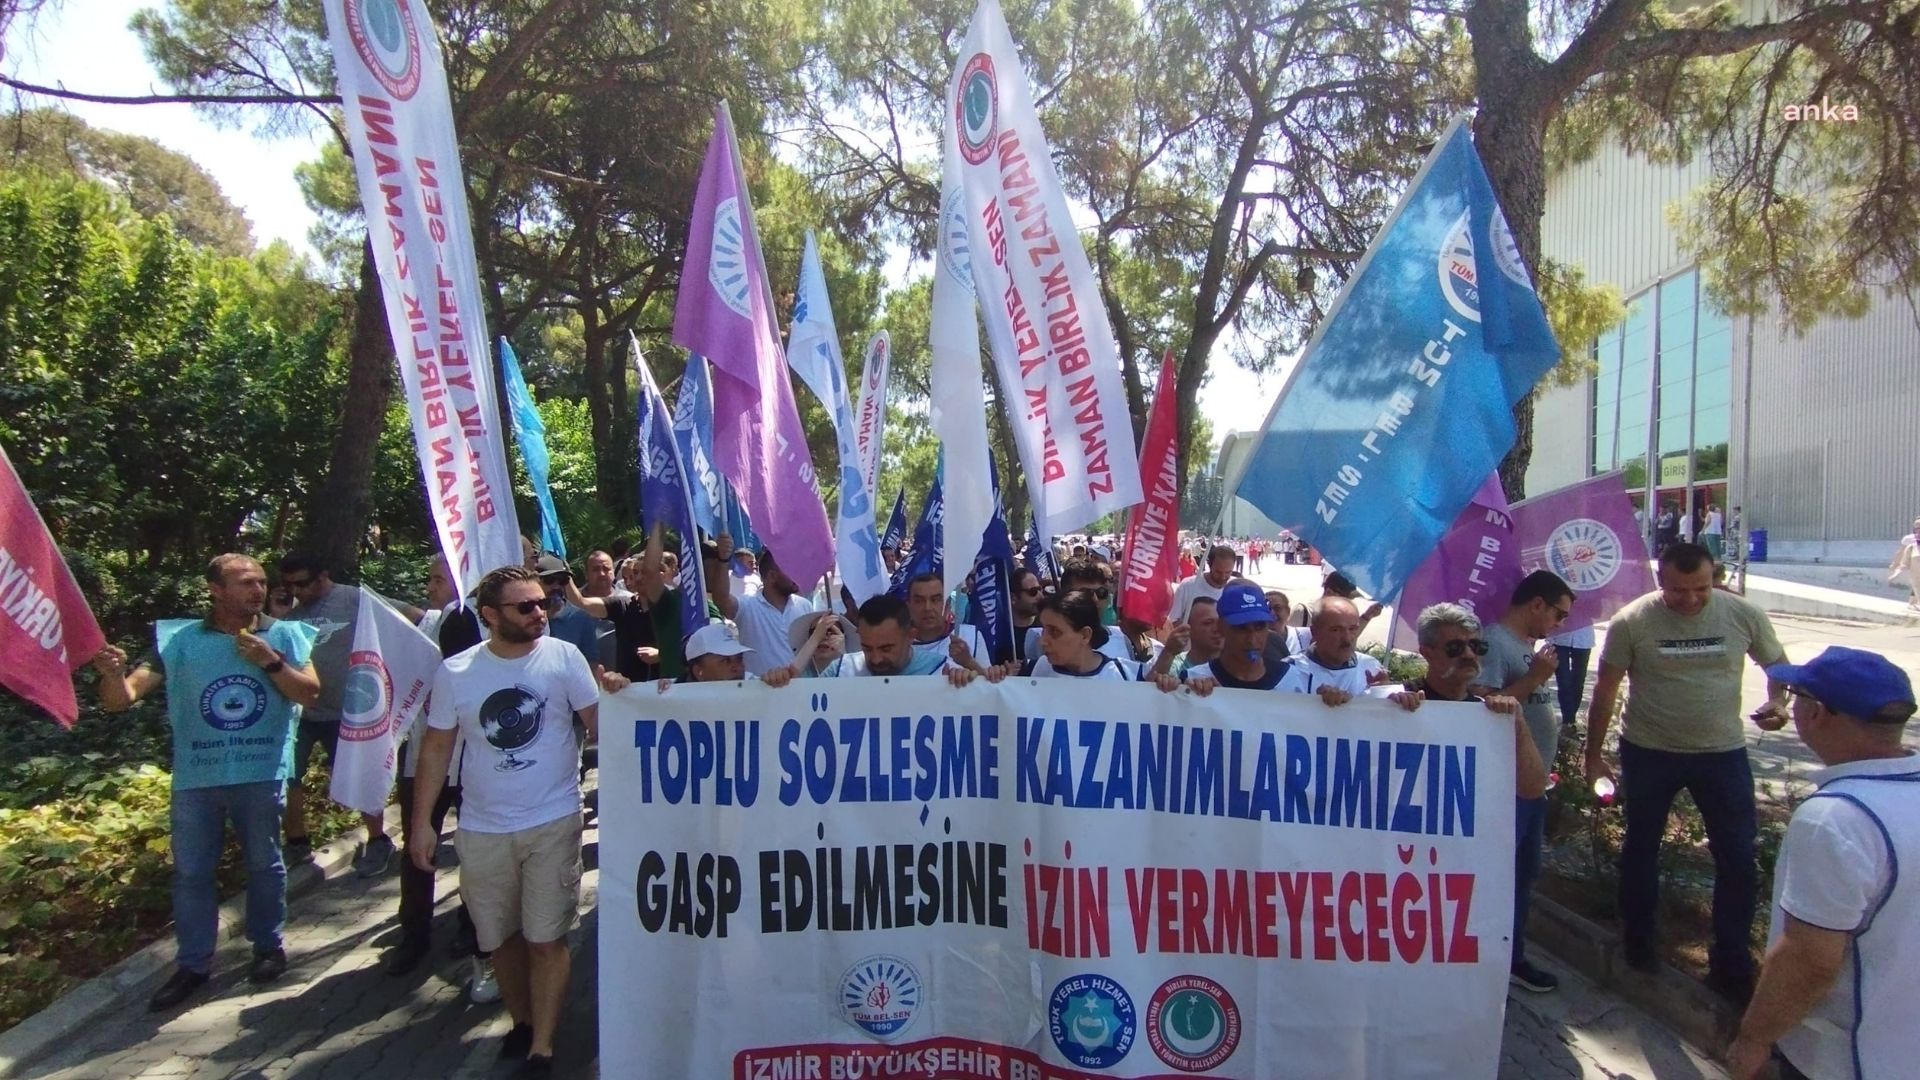 İzmir Büyükşehir Belediyesi’nden TİS görüşmeleri tıkandı: Memurlar tam gün iş bıraktı